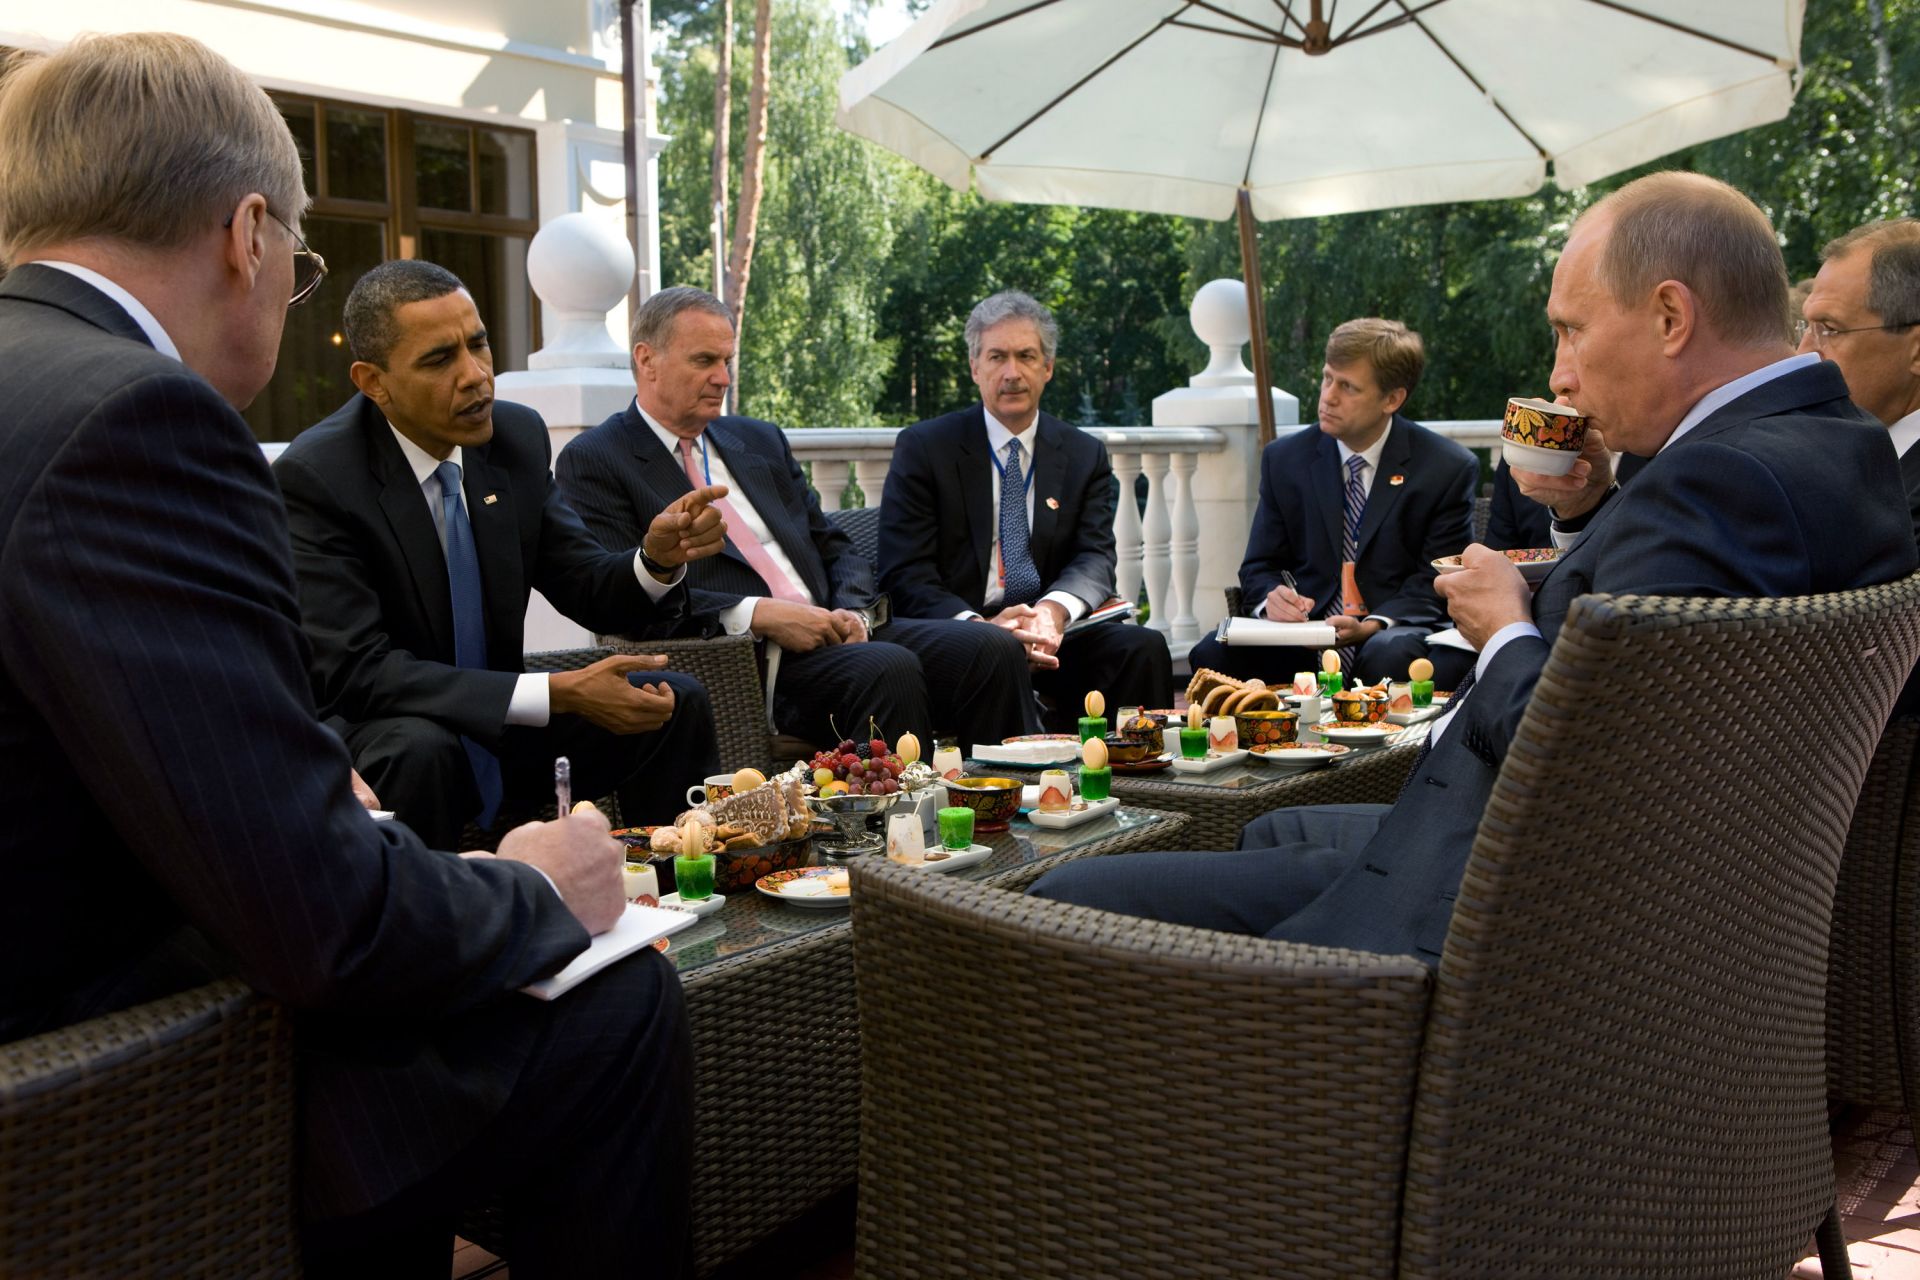 7 юли 2009 г. Aмериканският президент Барак Обама и членовете на американската делегация, генералният съветник по националната сигурност Джим Джоунс, заместник-секретарят по политическите въпроси Бил Бърнс и старши директорът по руските въпроси Майк Макфол се срещат с премиера Владимир Путин на дачата му в Москва, Русия.